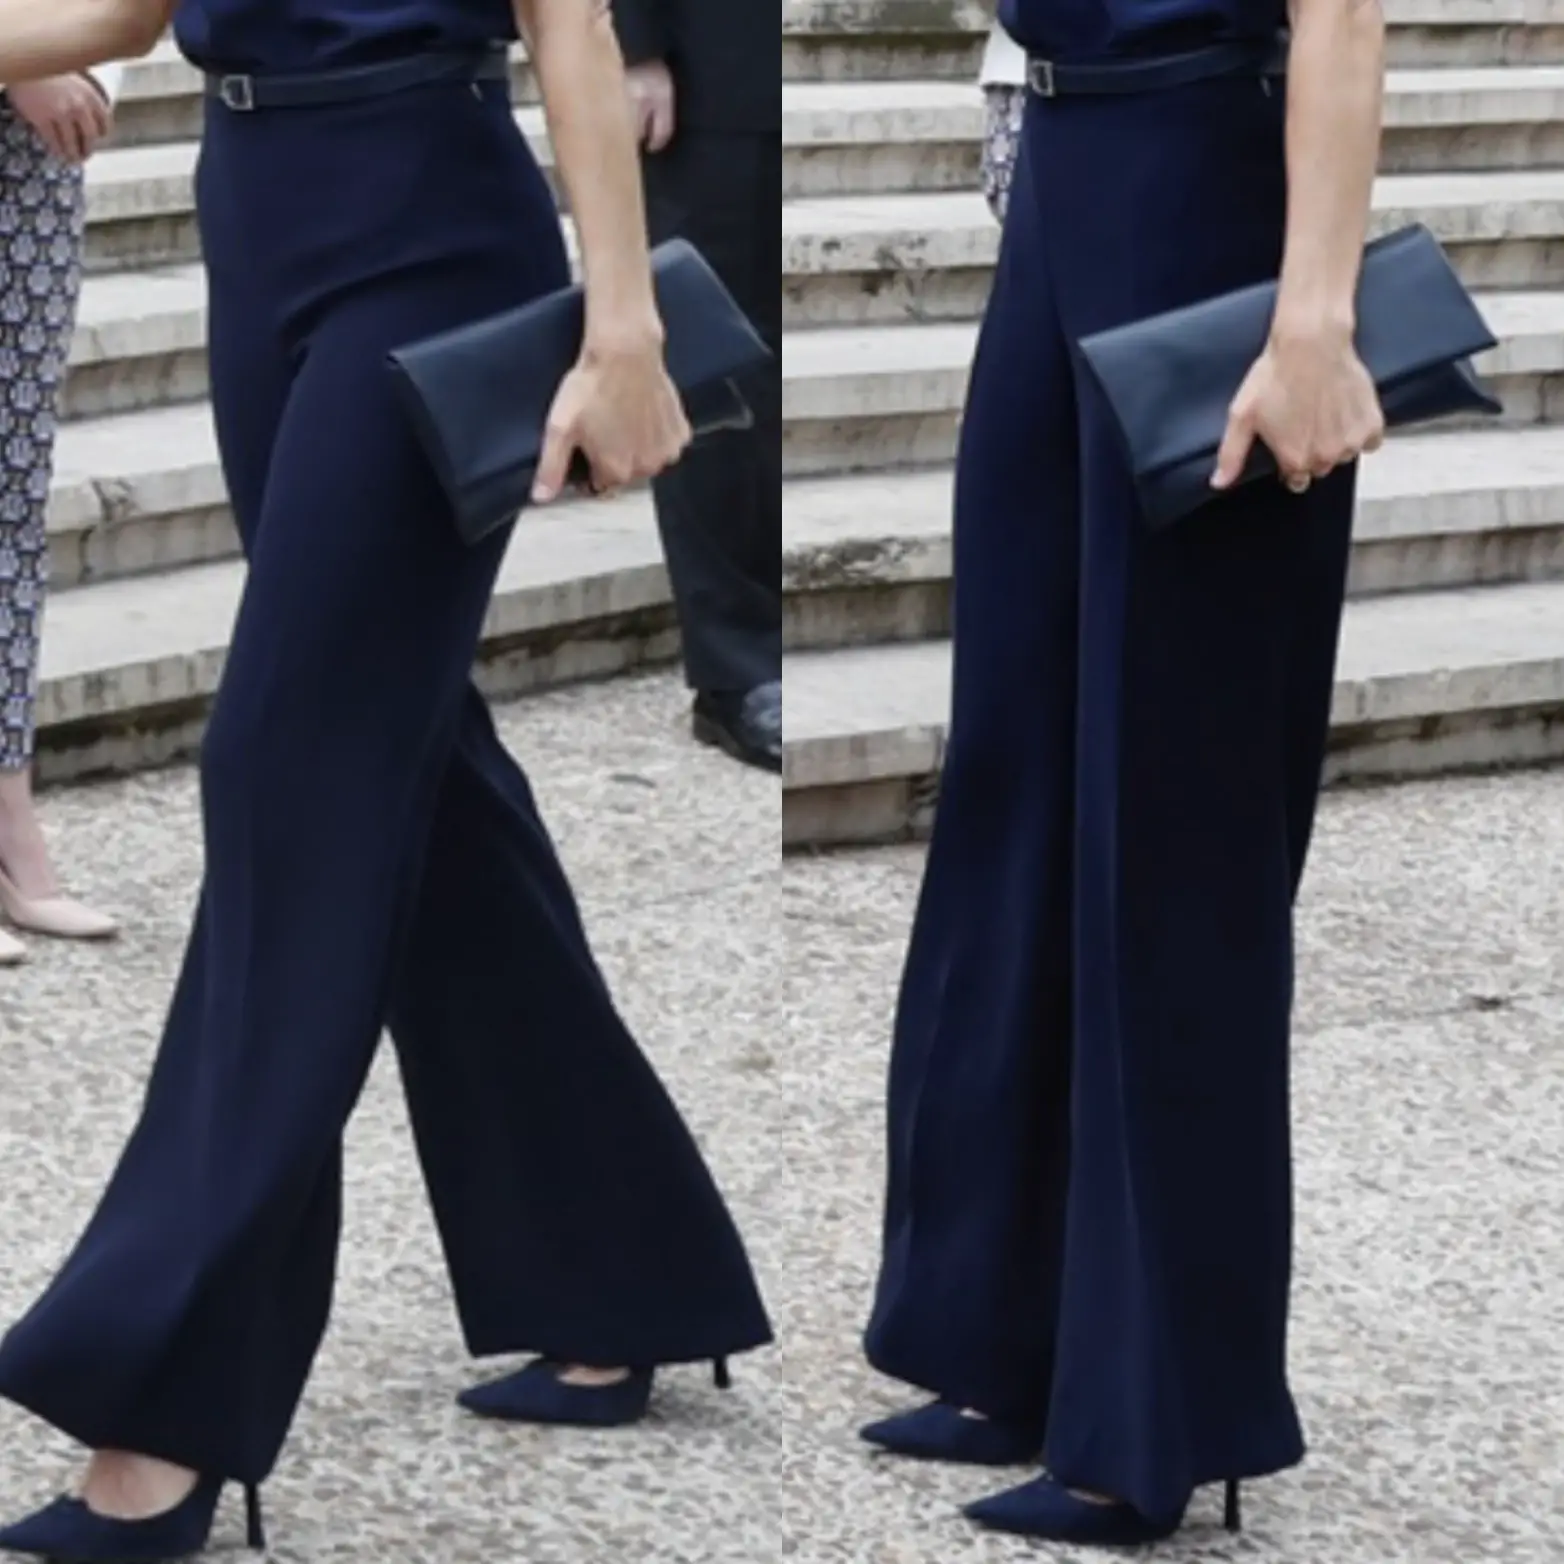 Queen Letizia wore navy wide leg high waister trouser